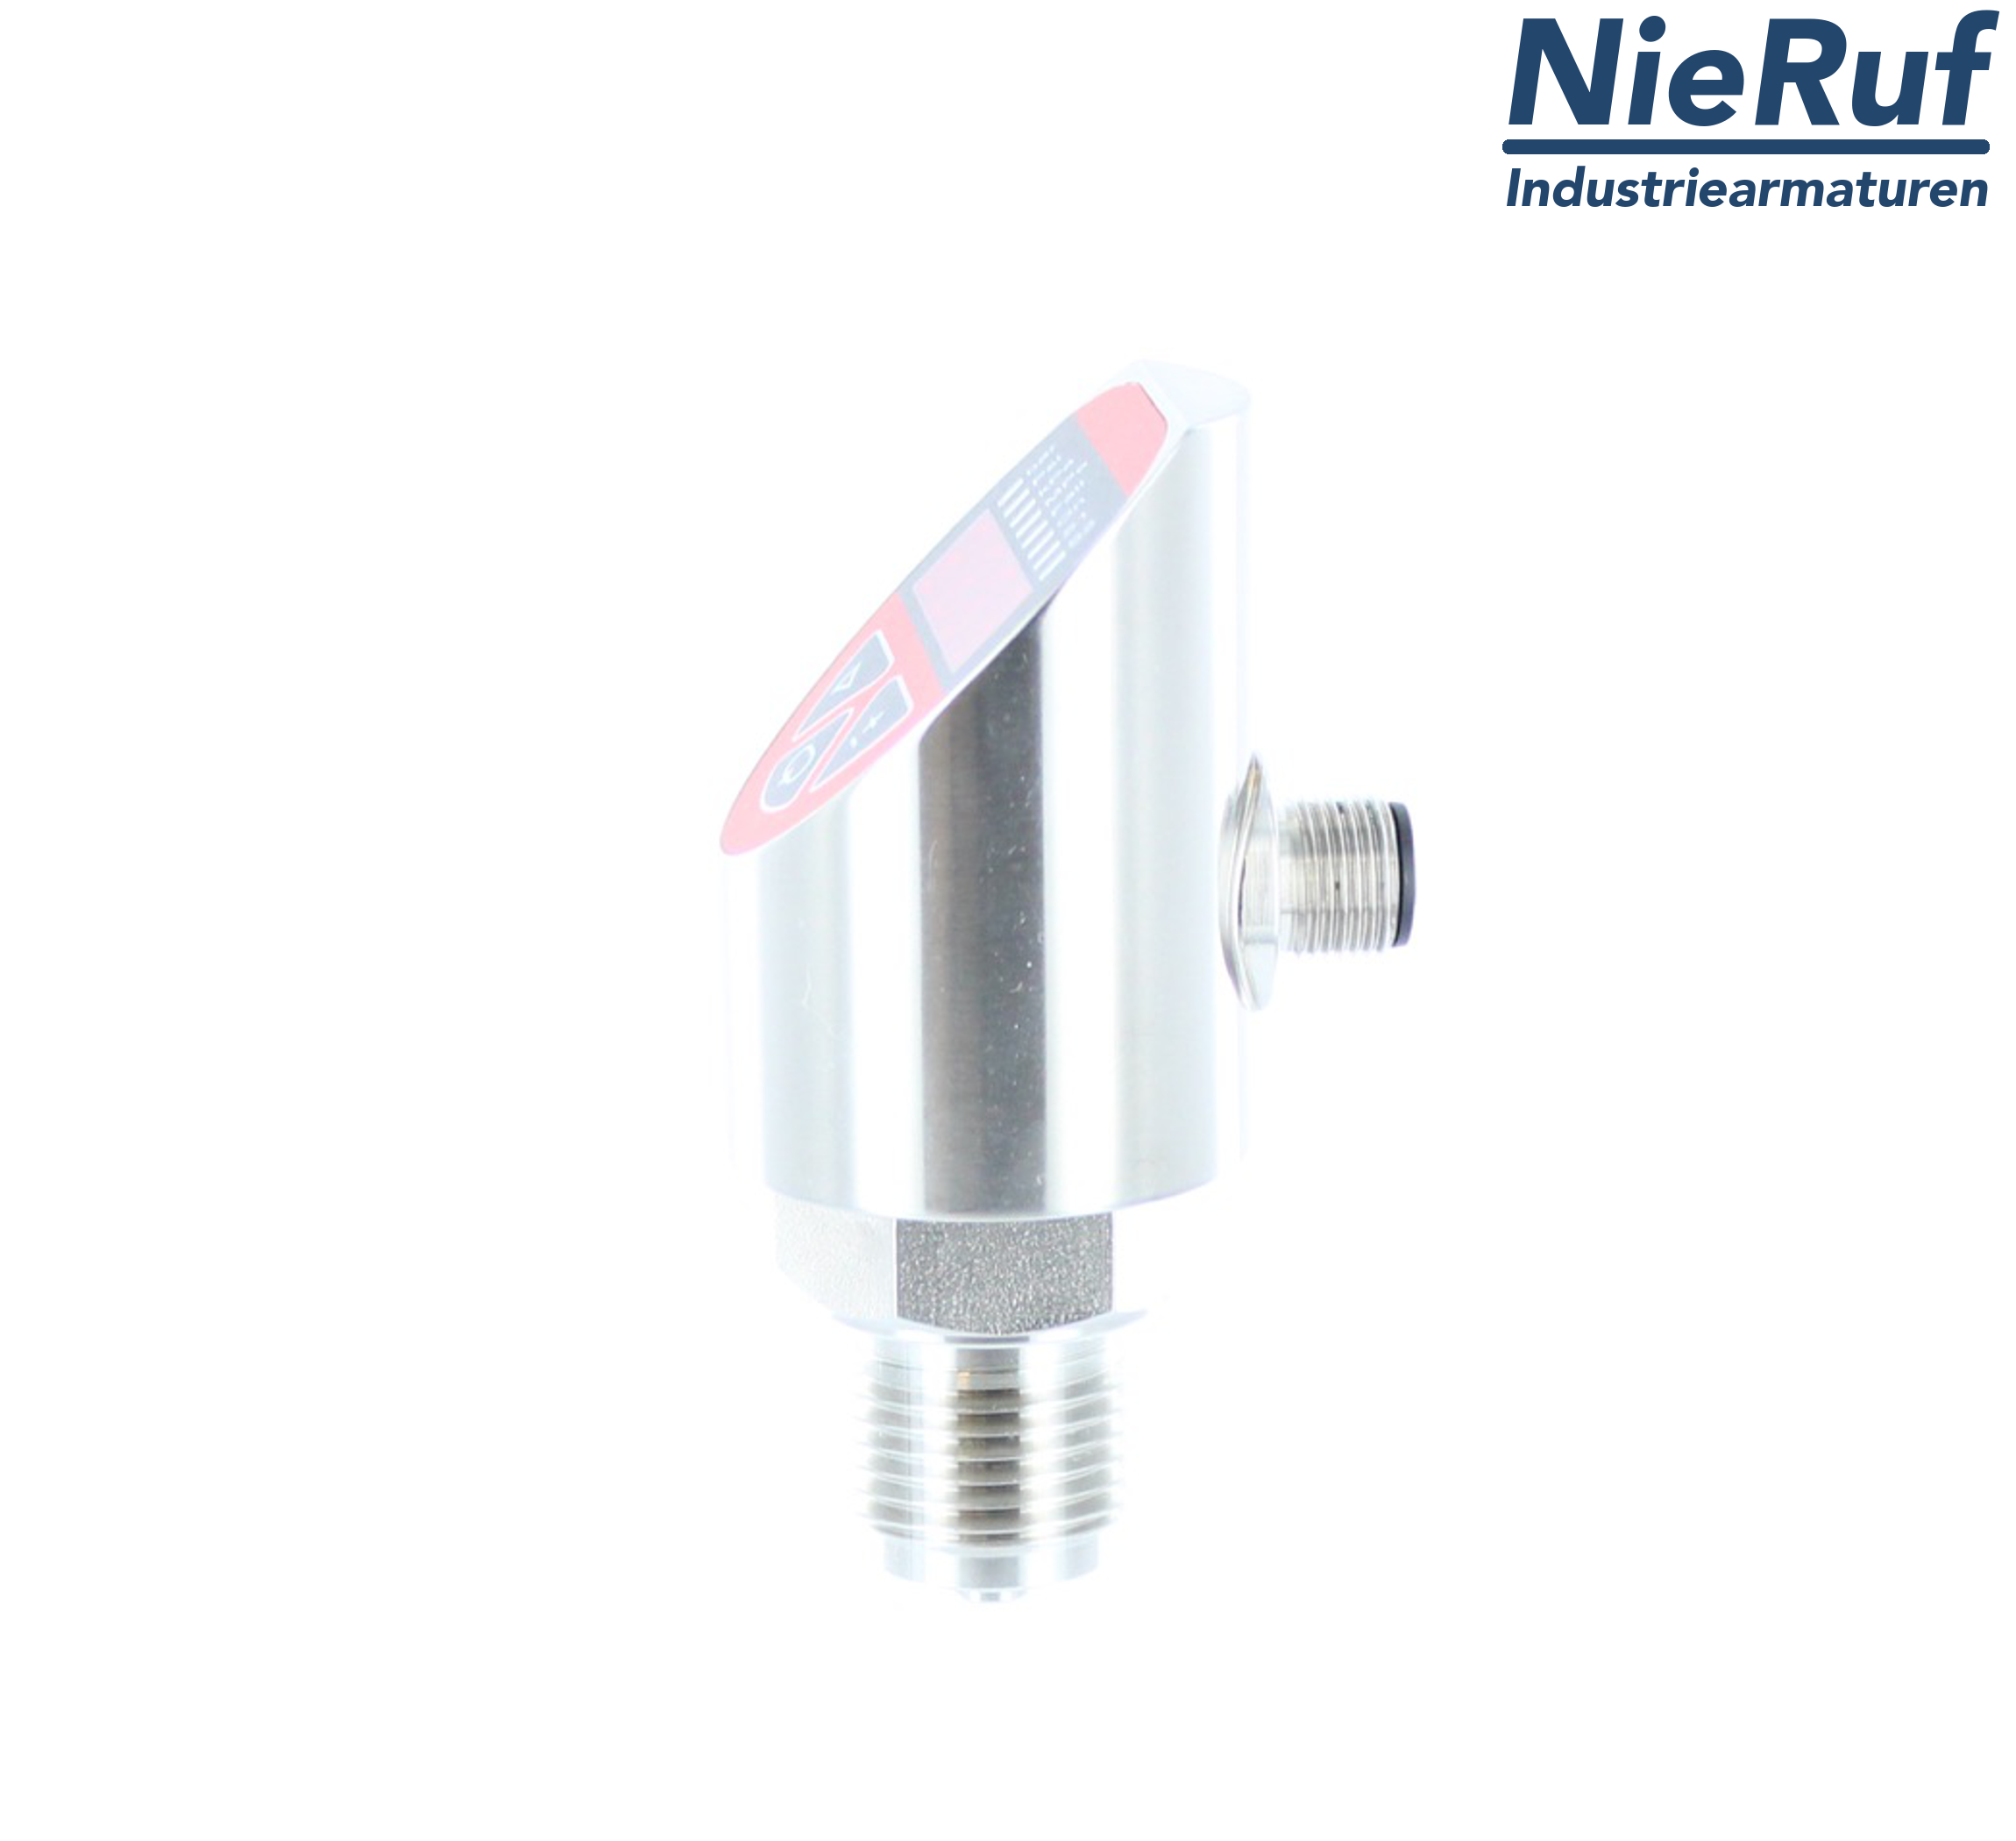 digital pressure sensor G 1/2" B 4-wire: 1xPNP, 1x4 - 20mA, Desina FPM 0,0 - 250,0 bar